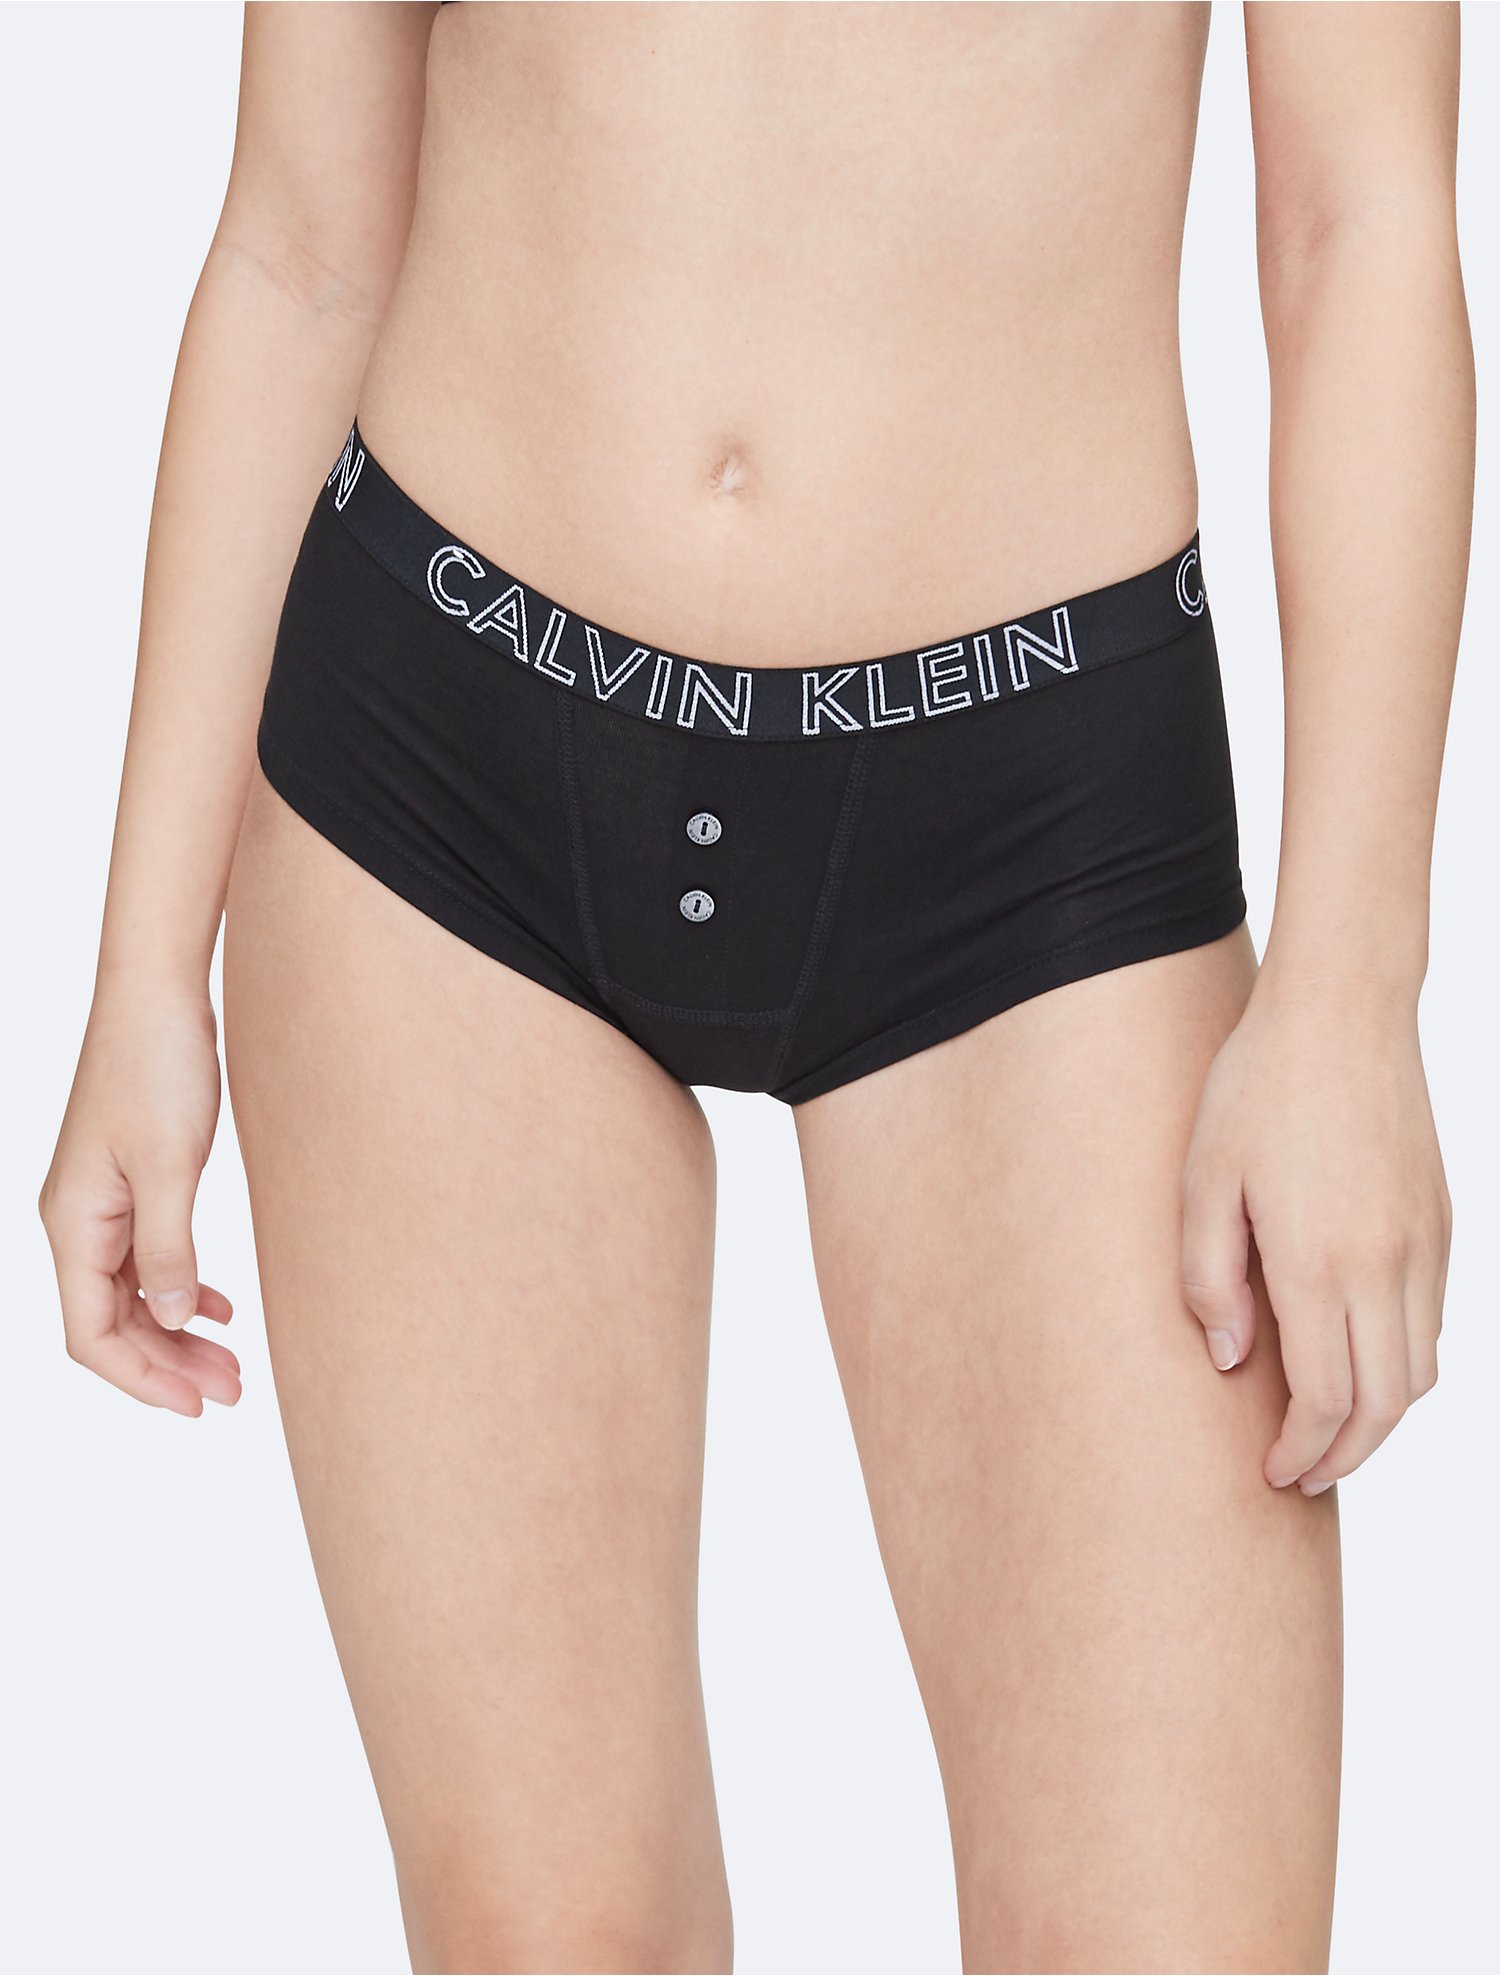 Descubrir 83+ imagen calvin klein women’s boyshort underwear